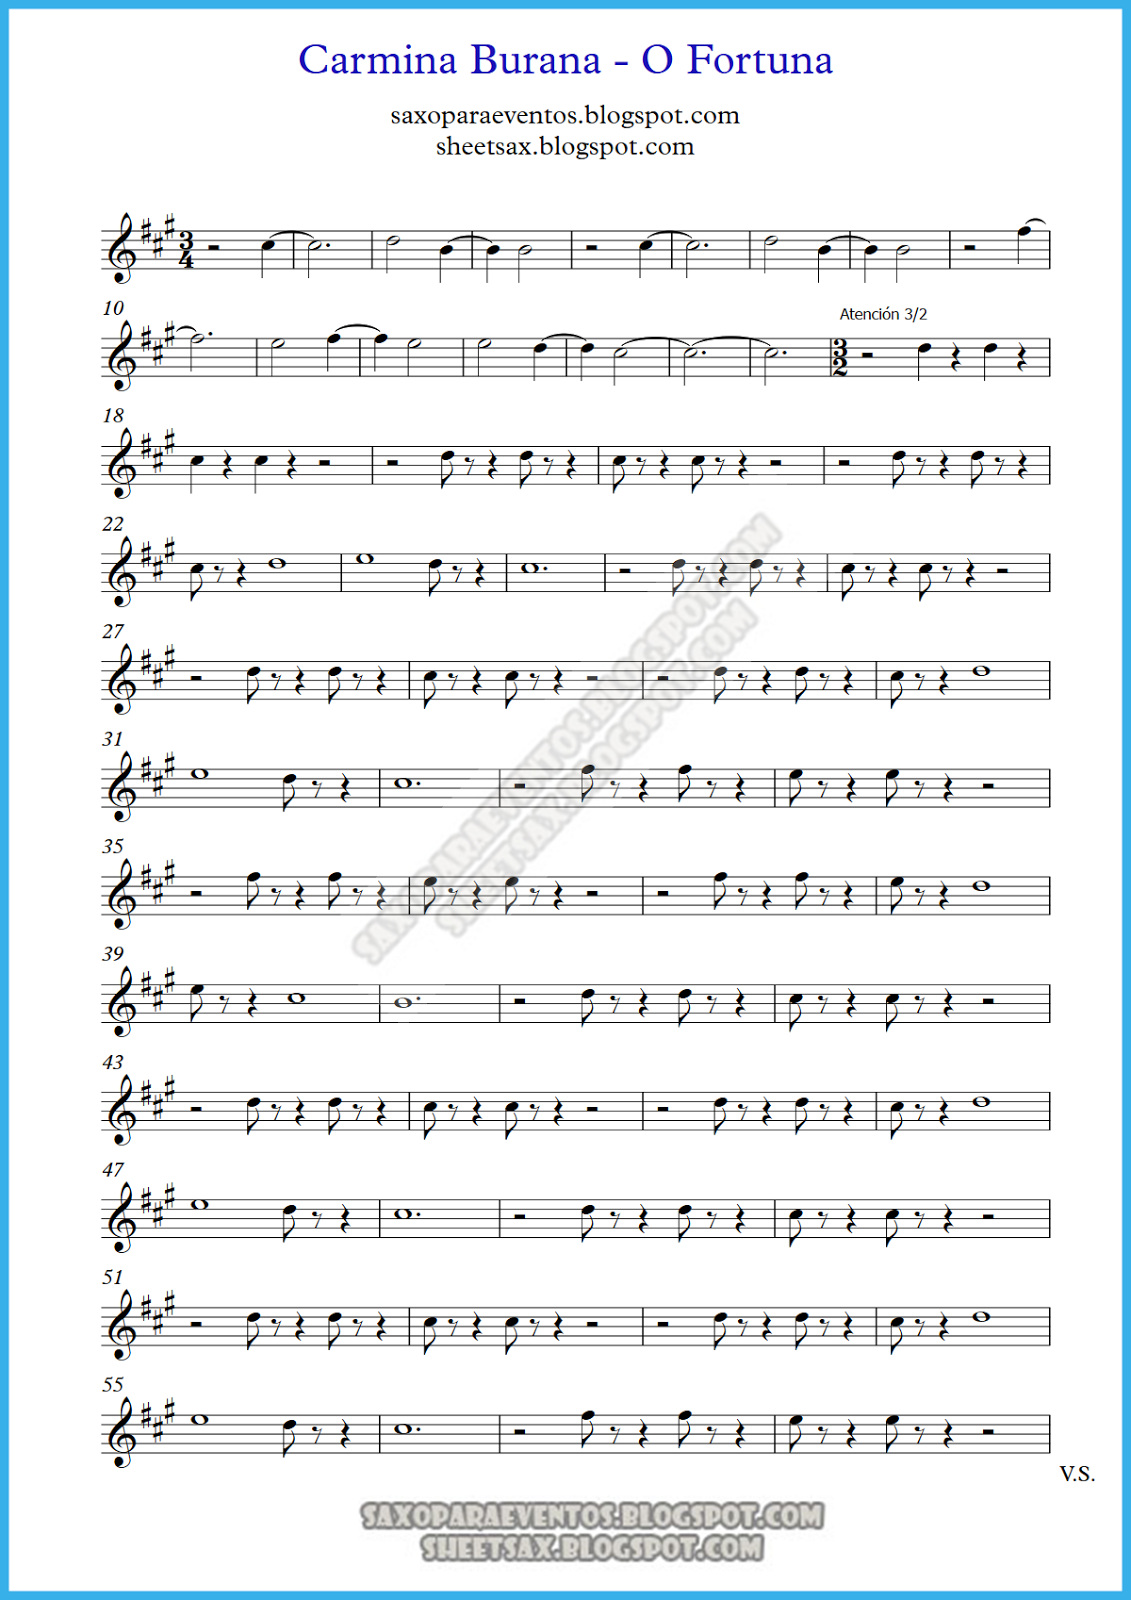 Music score of Carmina Burana (O fortuna) by Carl Orff (Sheet music for Carmina Burana)